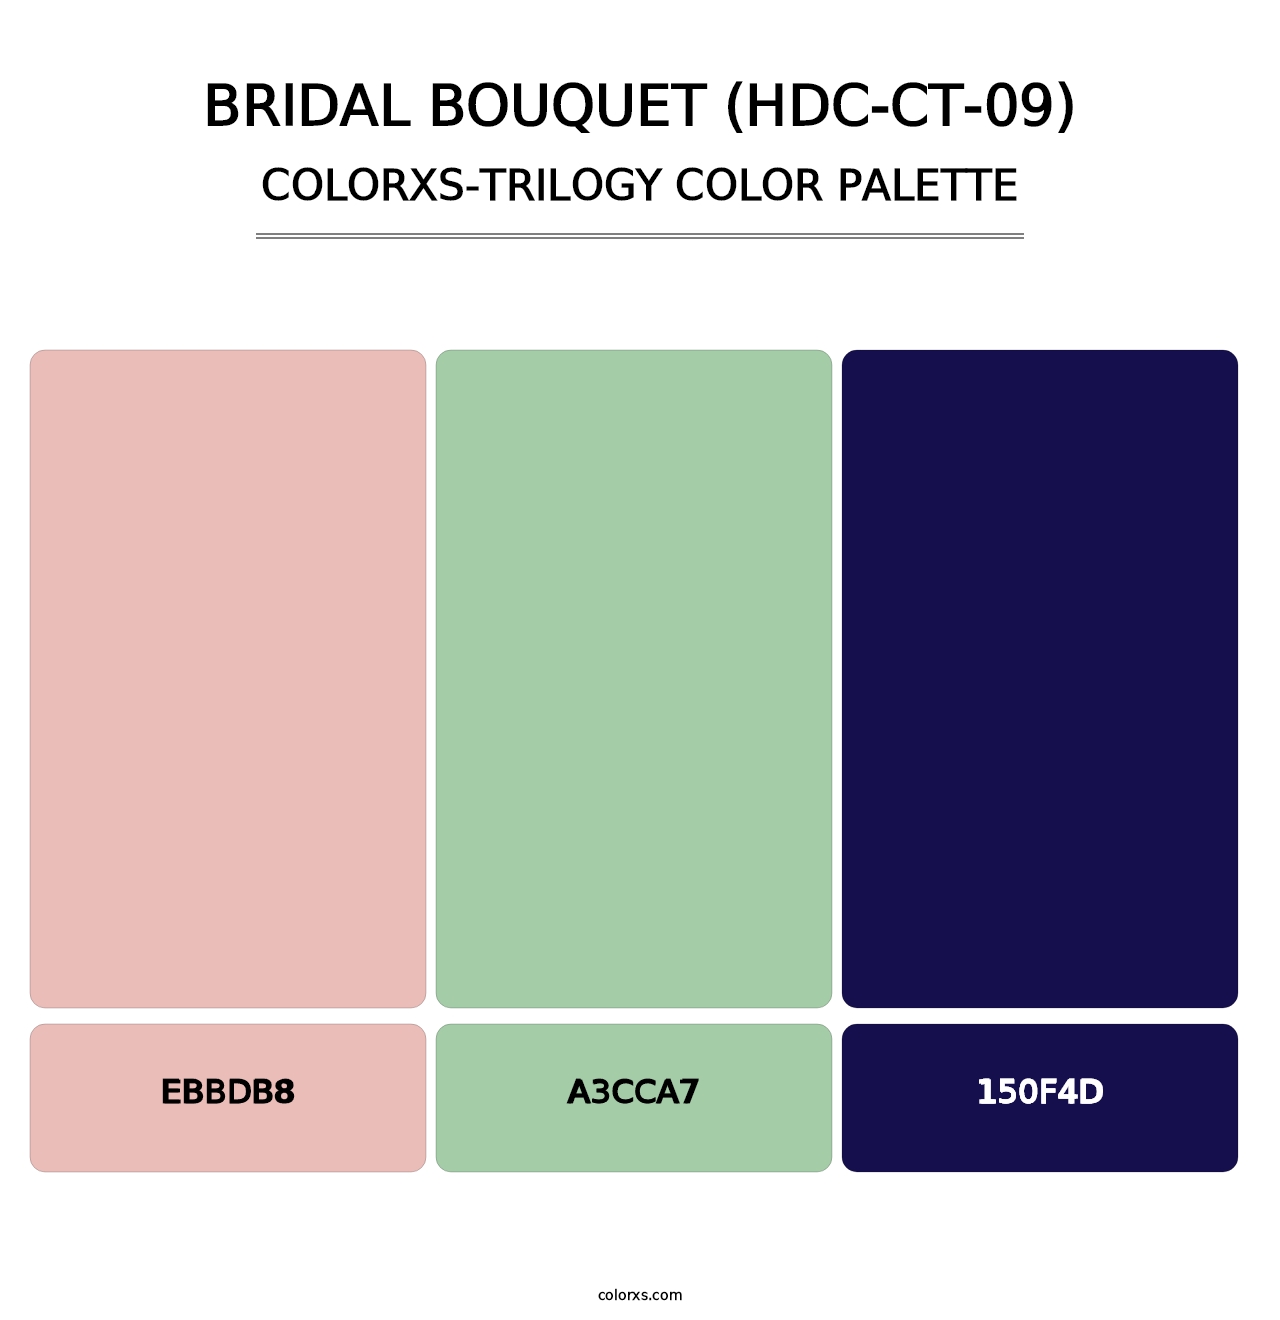 Bridal Bouquet (HDC-CT-09) - Colorxs Trilogy Palette